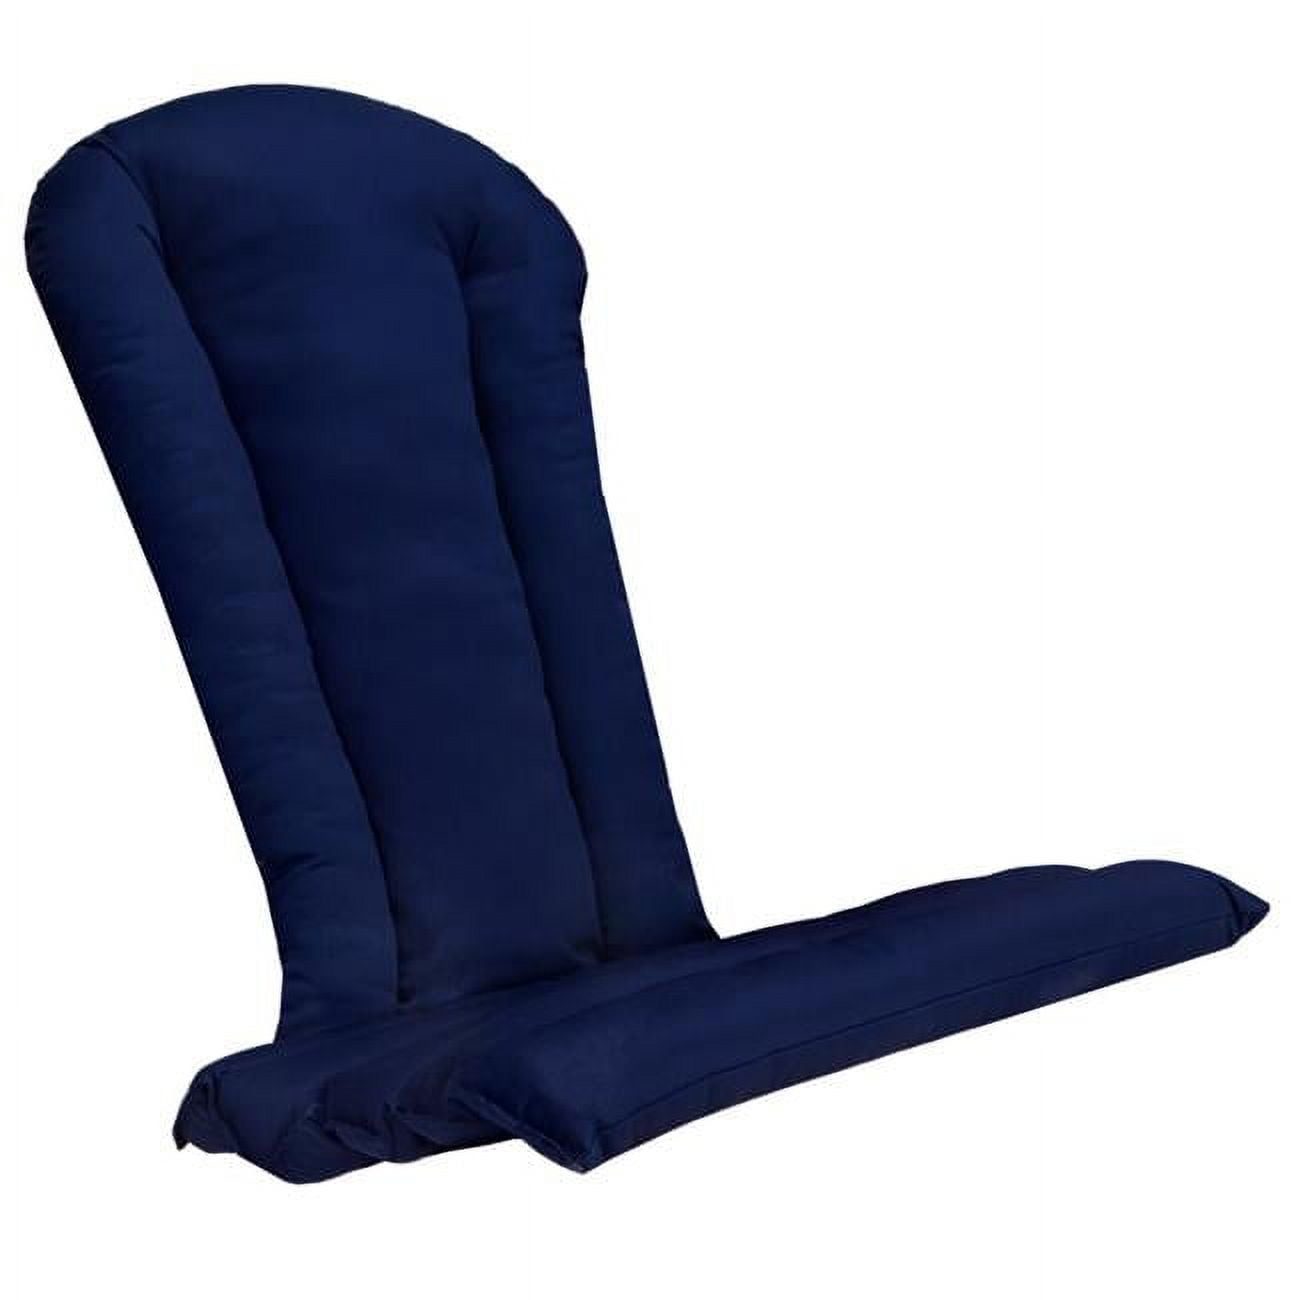 Picture of All Things Cedar CC21-B Adirondack Chair Cushion, Blue